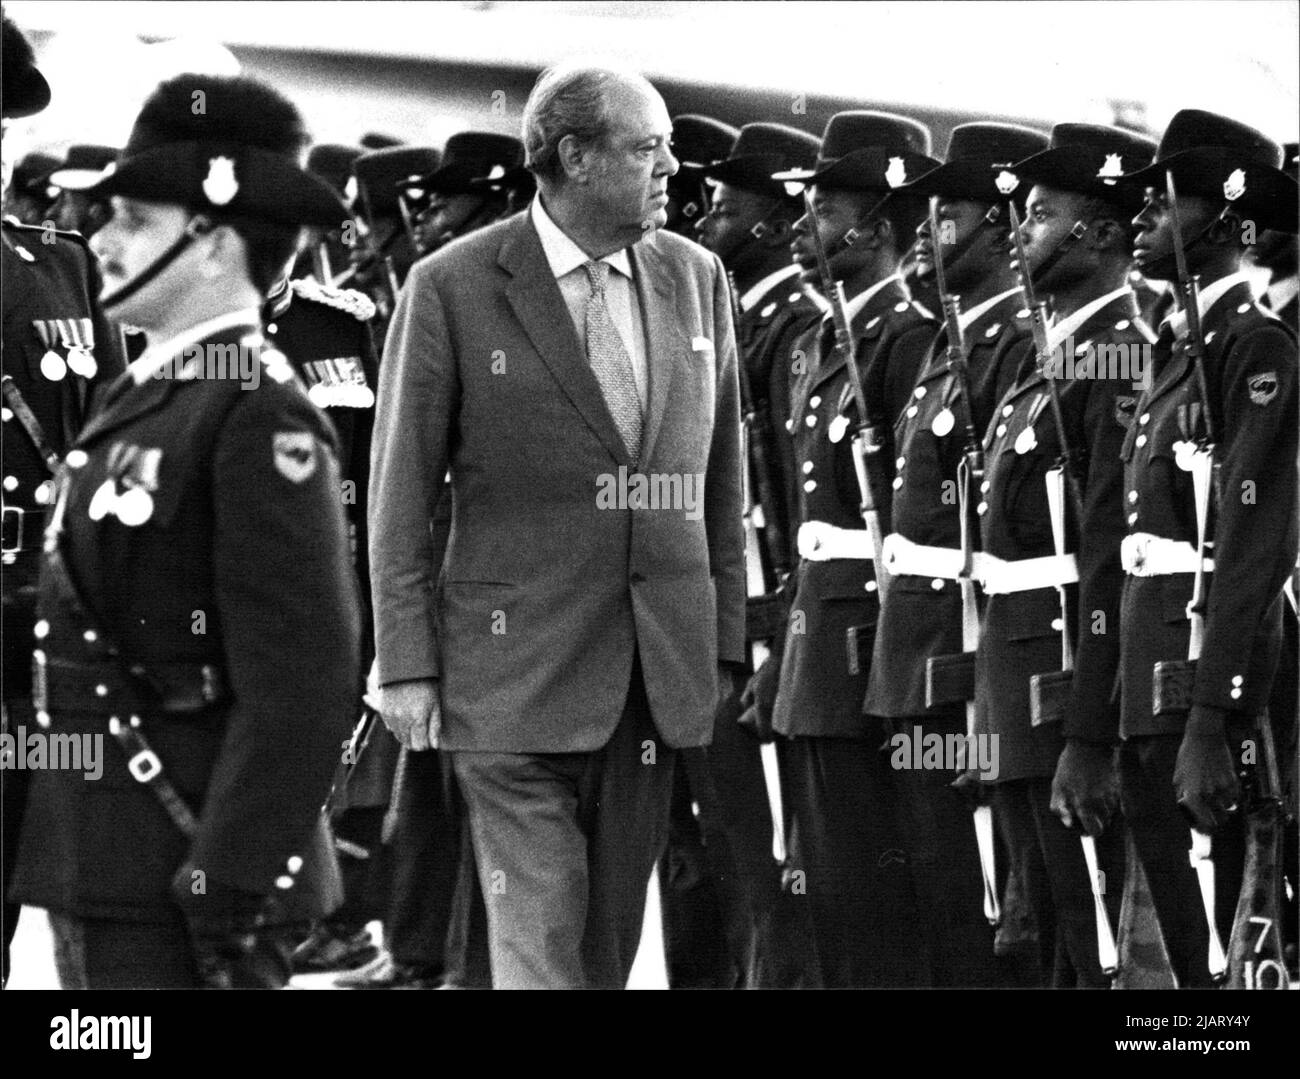 Das Foto zeigt Lord Soames, letzter Gouverneur Rhodesiens, auf dem Flughafen von Salisbury, wo er mit einem militärischem Zeremoniell verabschiedet wird. Stock Photo